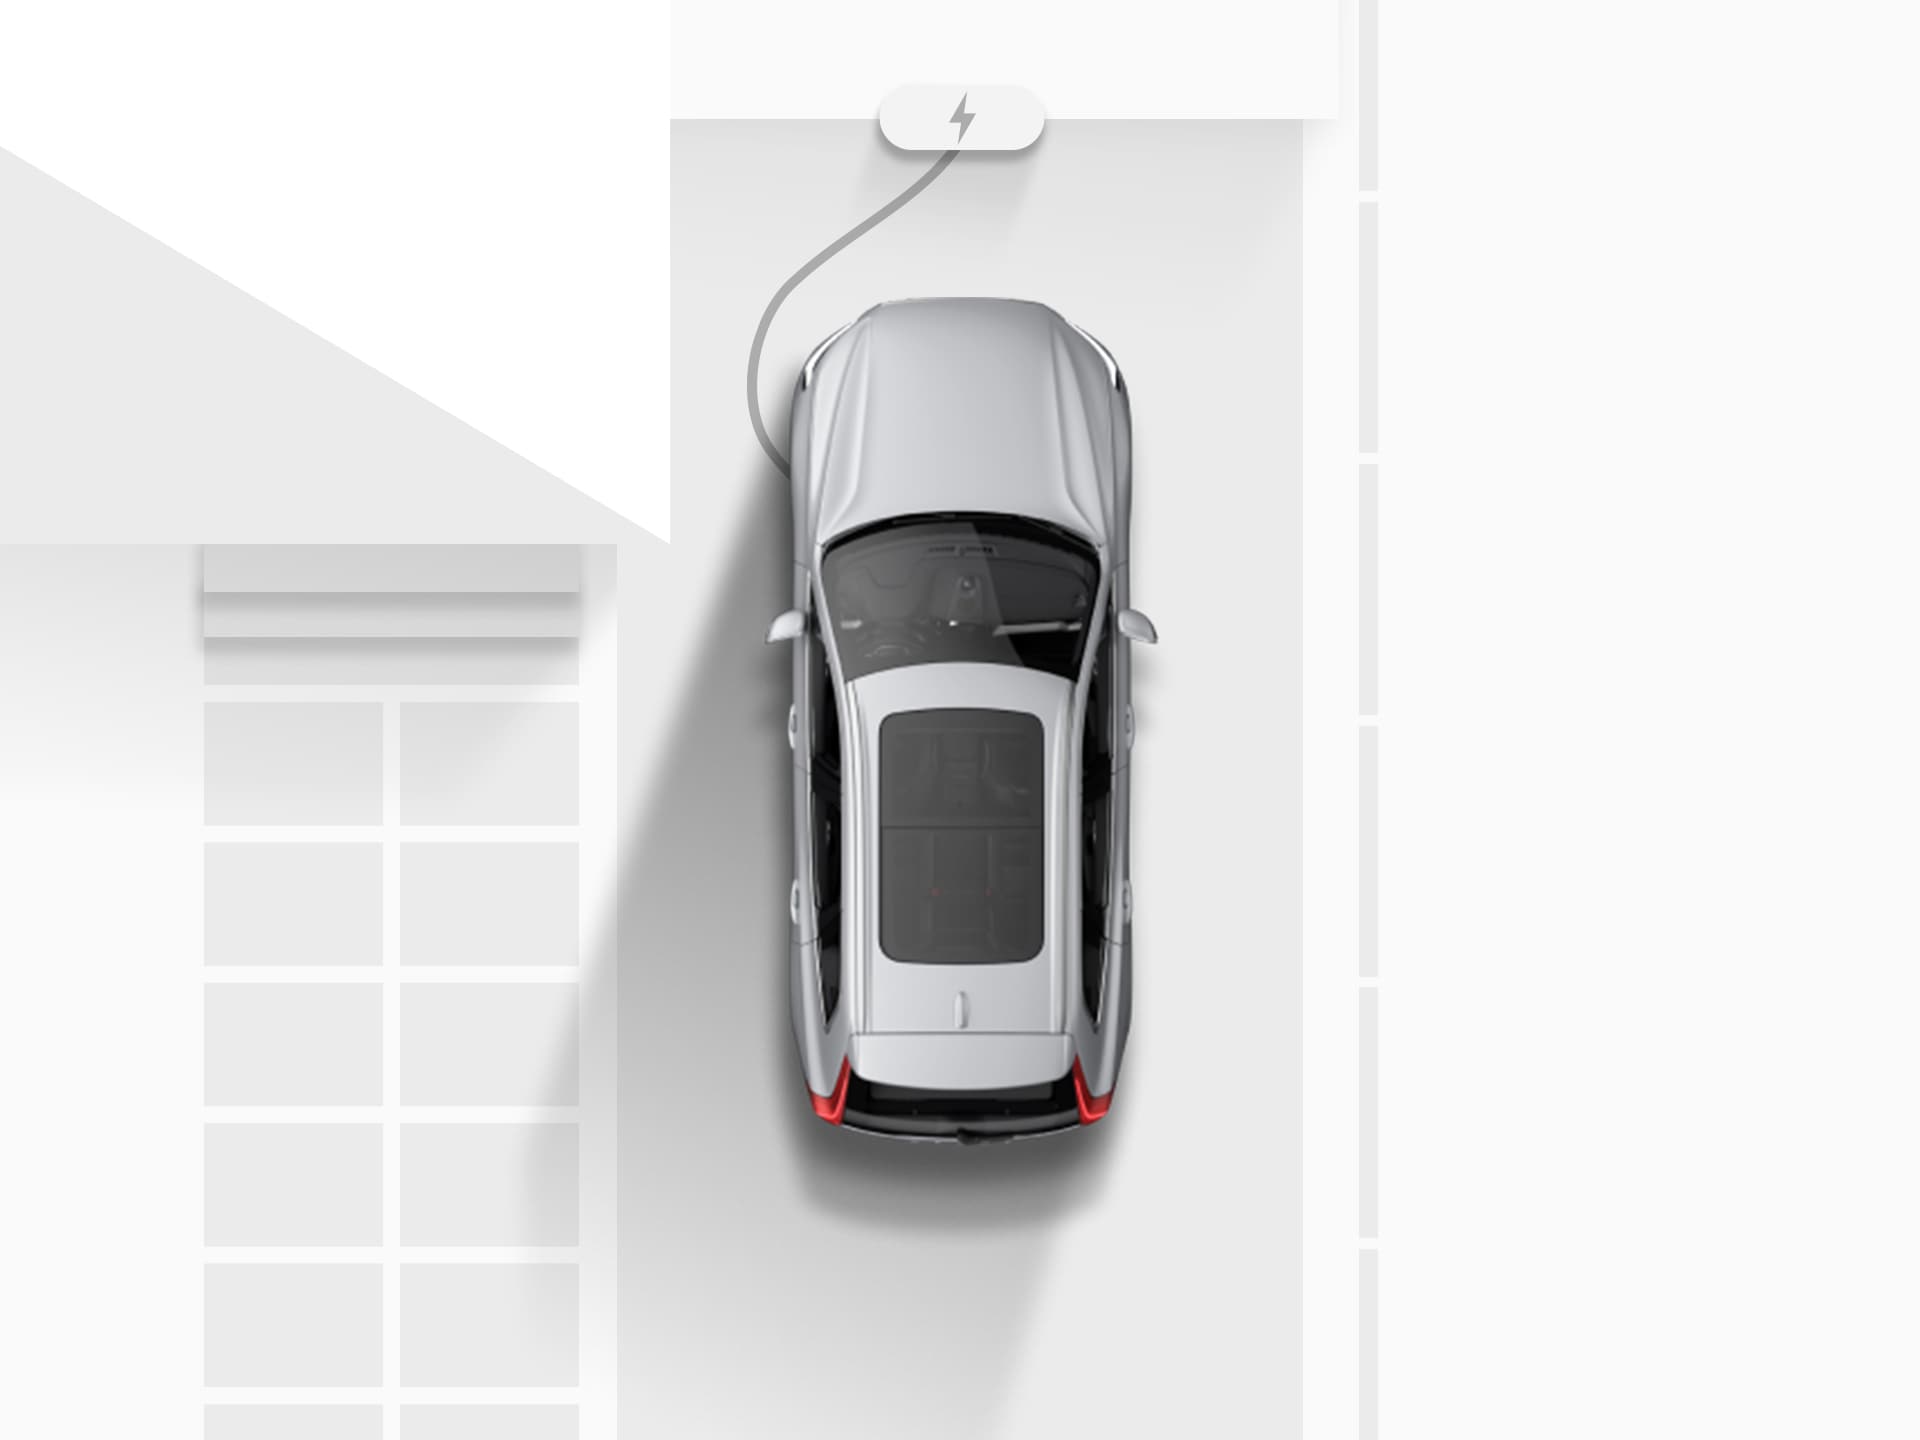 ภาพมุมสูงของภาพวาดดิจิตอลของ Volvo XC40 Recharge SUV ระบบไฟฟ้าสีเงิน ที่กำลังเสียบสายชาร์จไฟอยู่บนถนนทางเข้าบ้าน